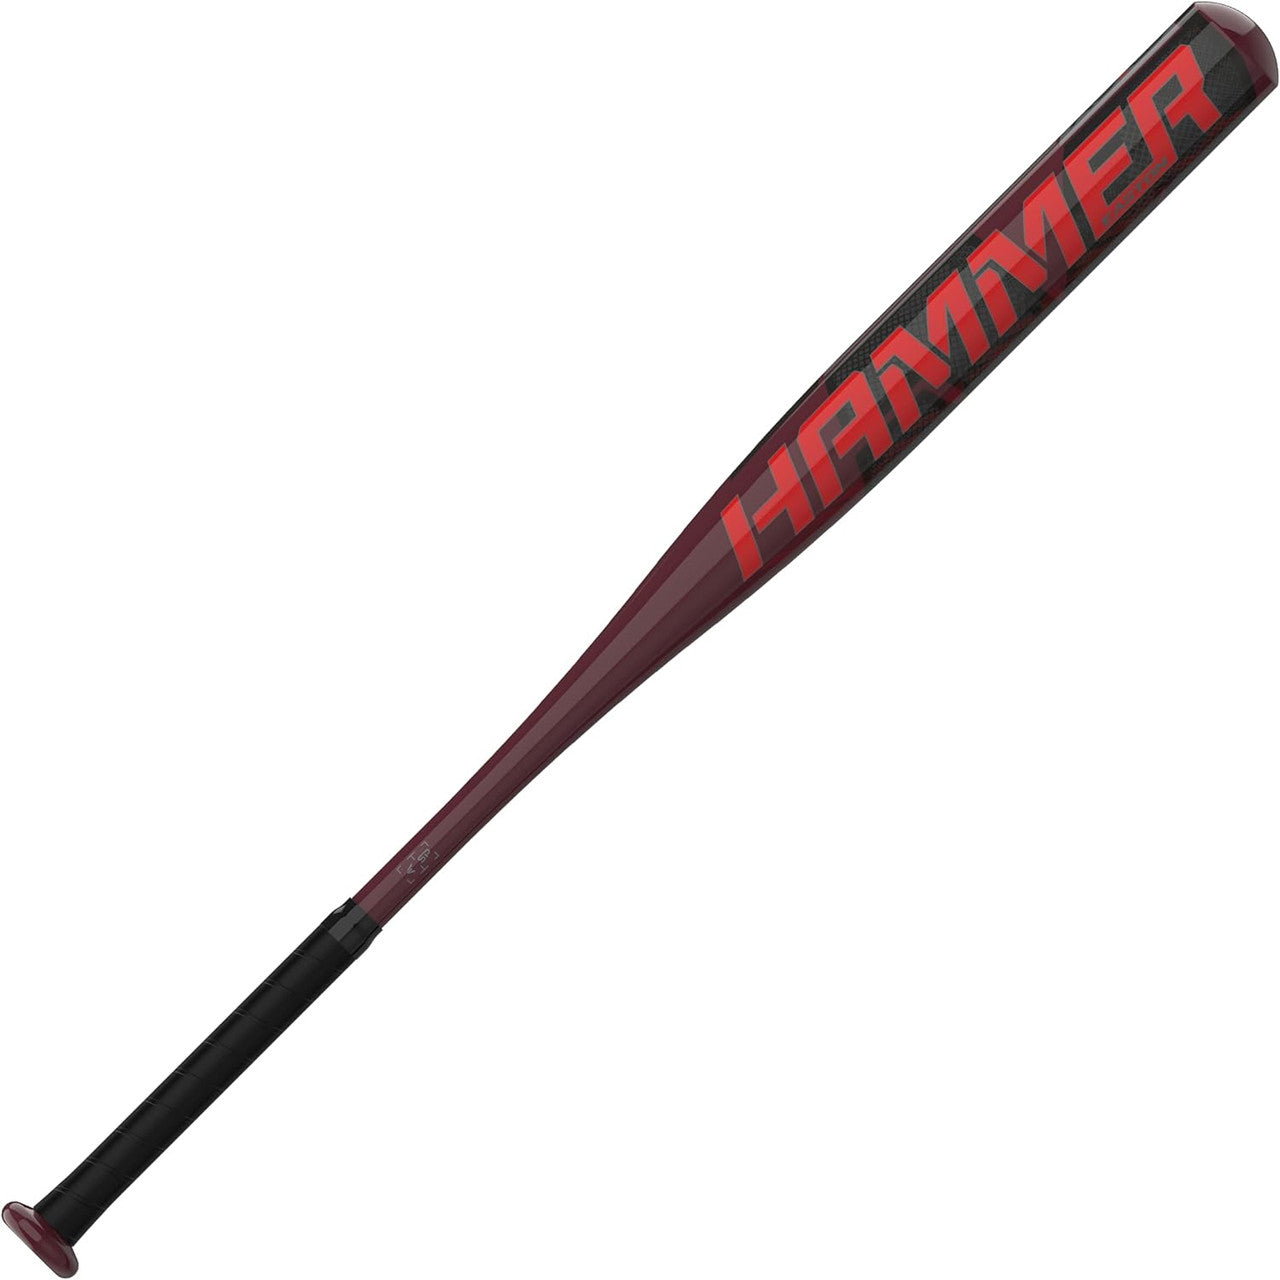 Easton Hammer Slowpitch Softball Bat